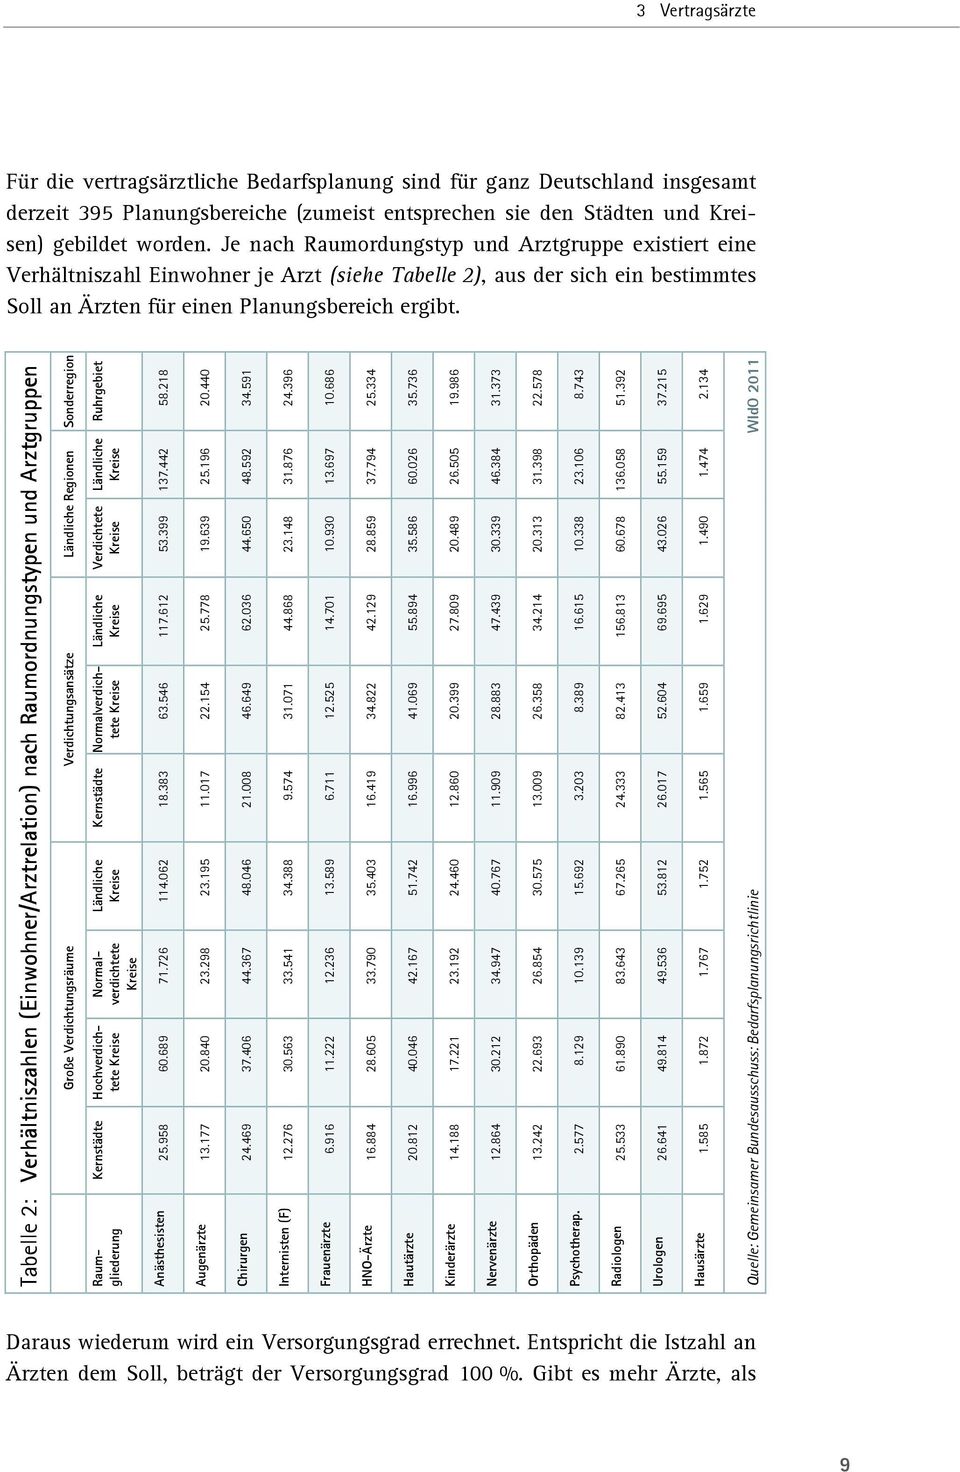 Tabelle 2: Verhältniszahlen (Einwohner/Arztrelation) nach Raumordnungstypen und Arztgruppen Große Verdichtungsräume Verdichtungsansätze Ländliche Regionen Sonderregion Raumgliederung Kernstädte